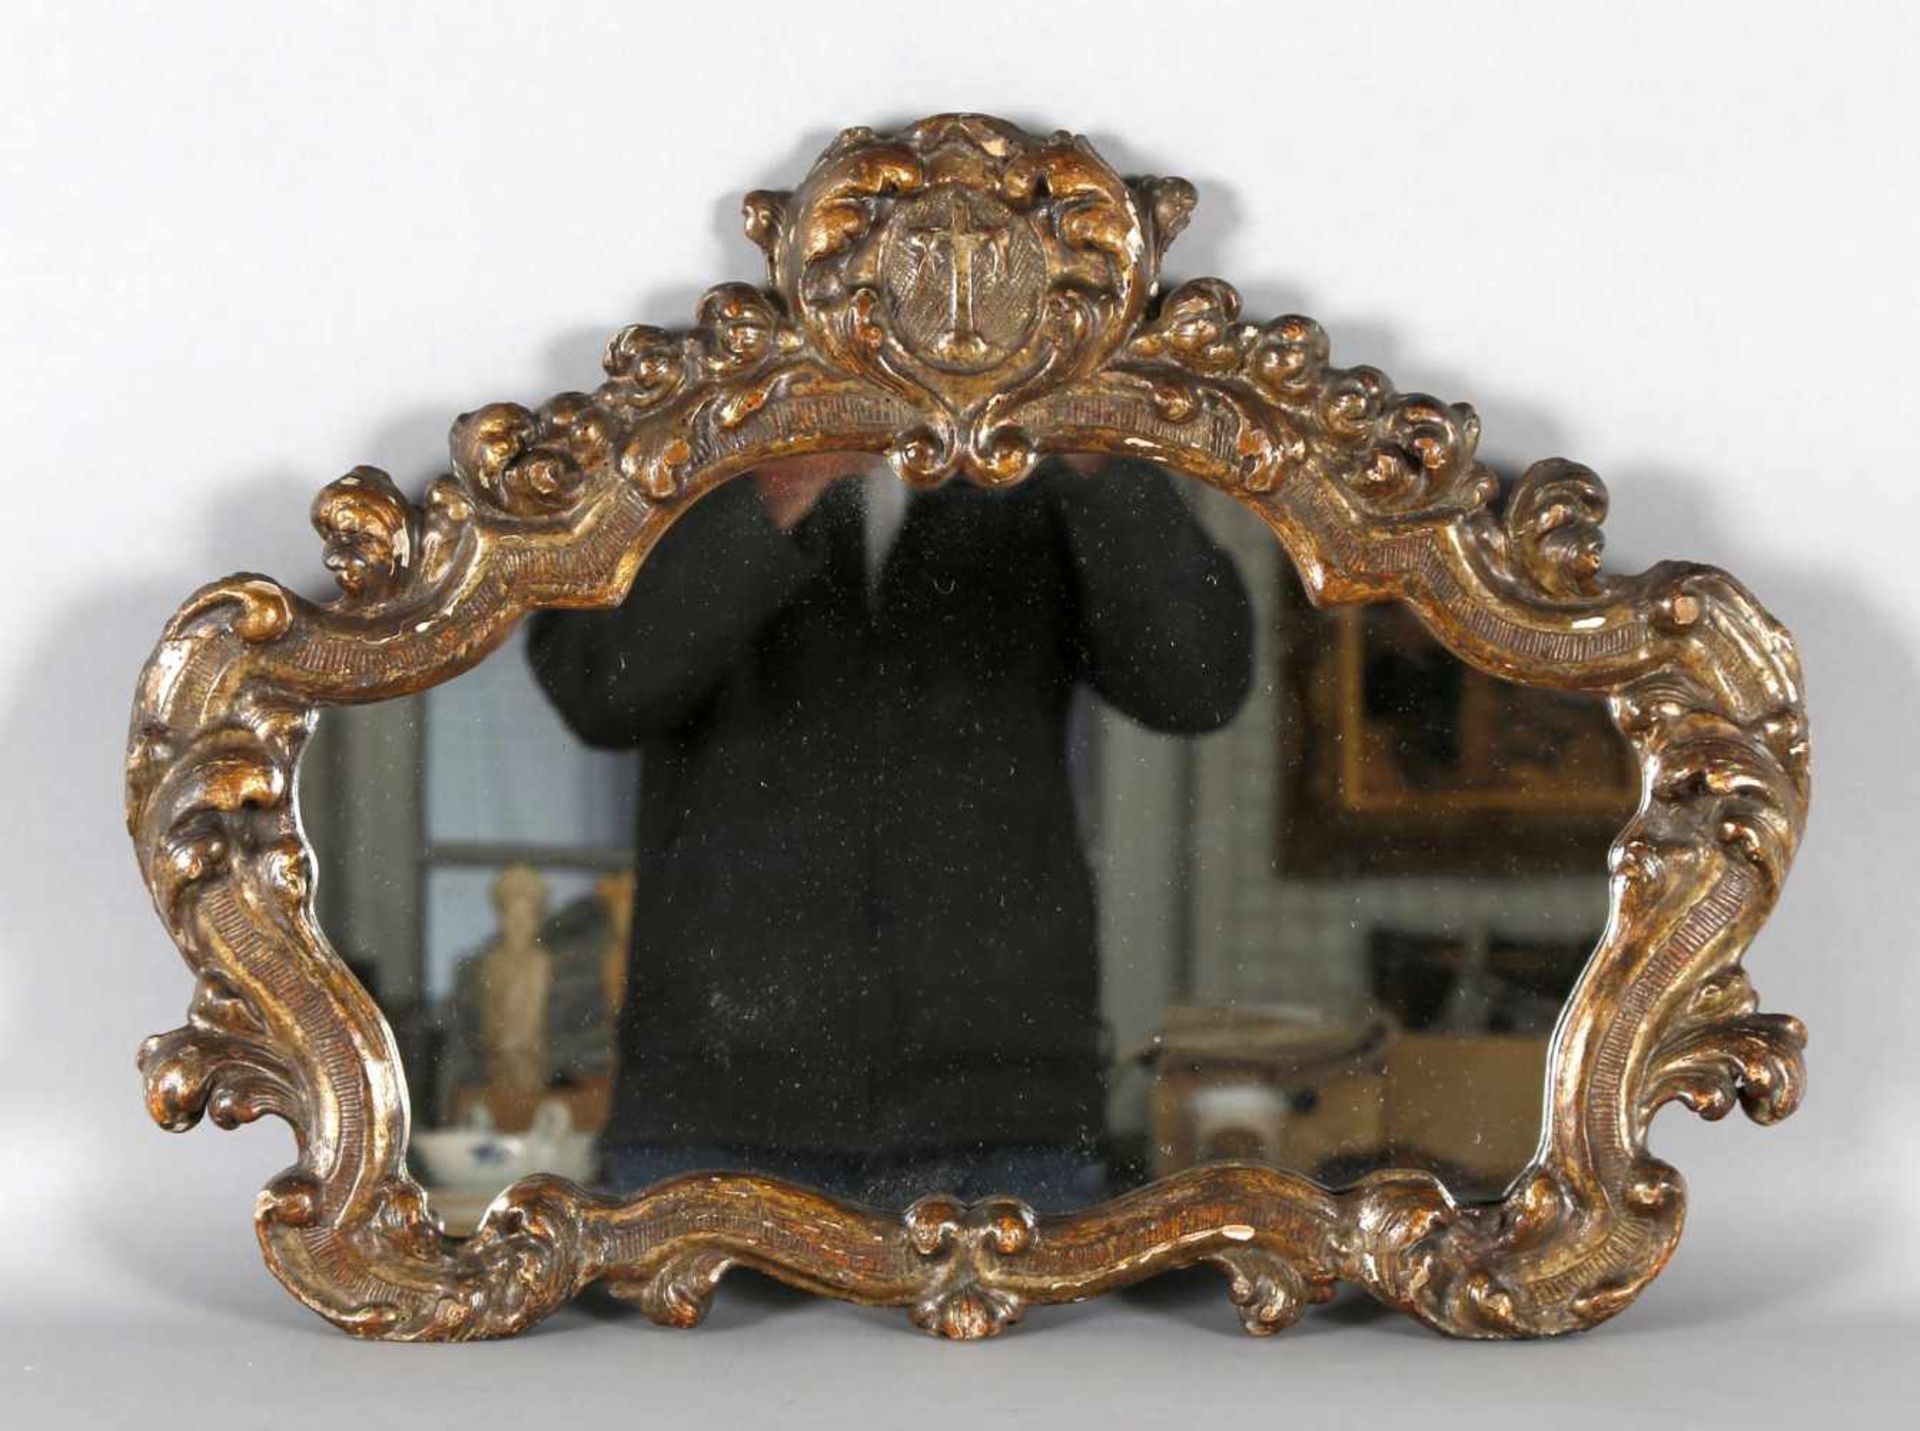 Geschweifter Spiegel, wohl noch 18. Jh.Holz geschnitzt und vergoldet, Querformat, geschweifte Form